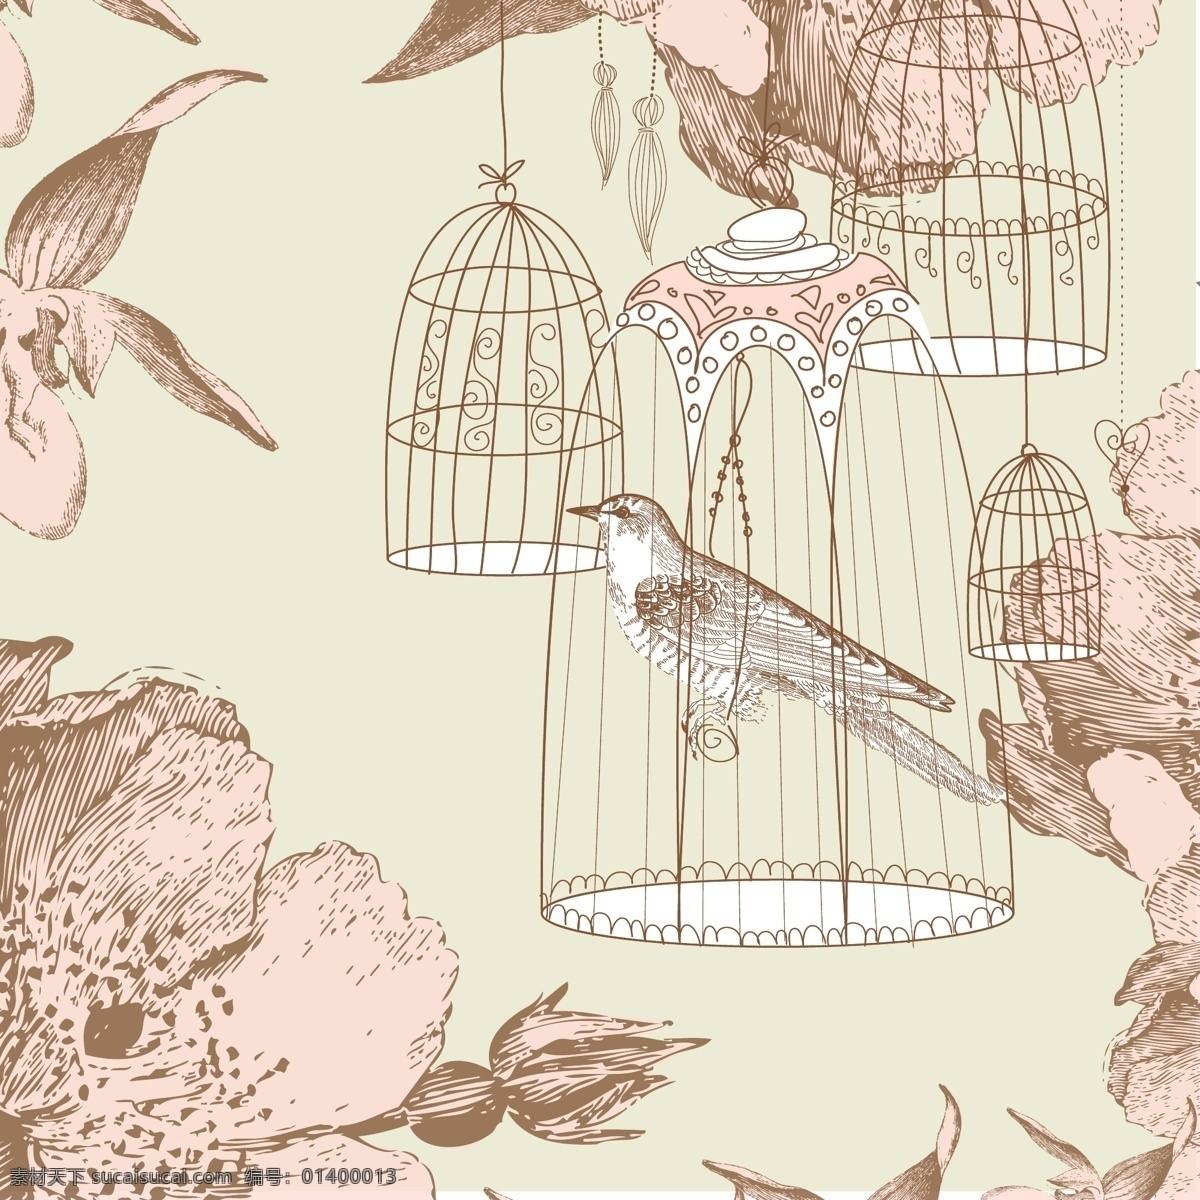 复古 风 手绘 简 笔画 矢量 装饰 图案 蔷薇花 笼中鸟 小鸟 淡粉色 装饰图案素材